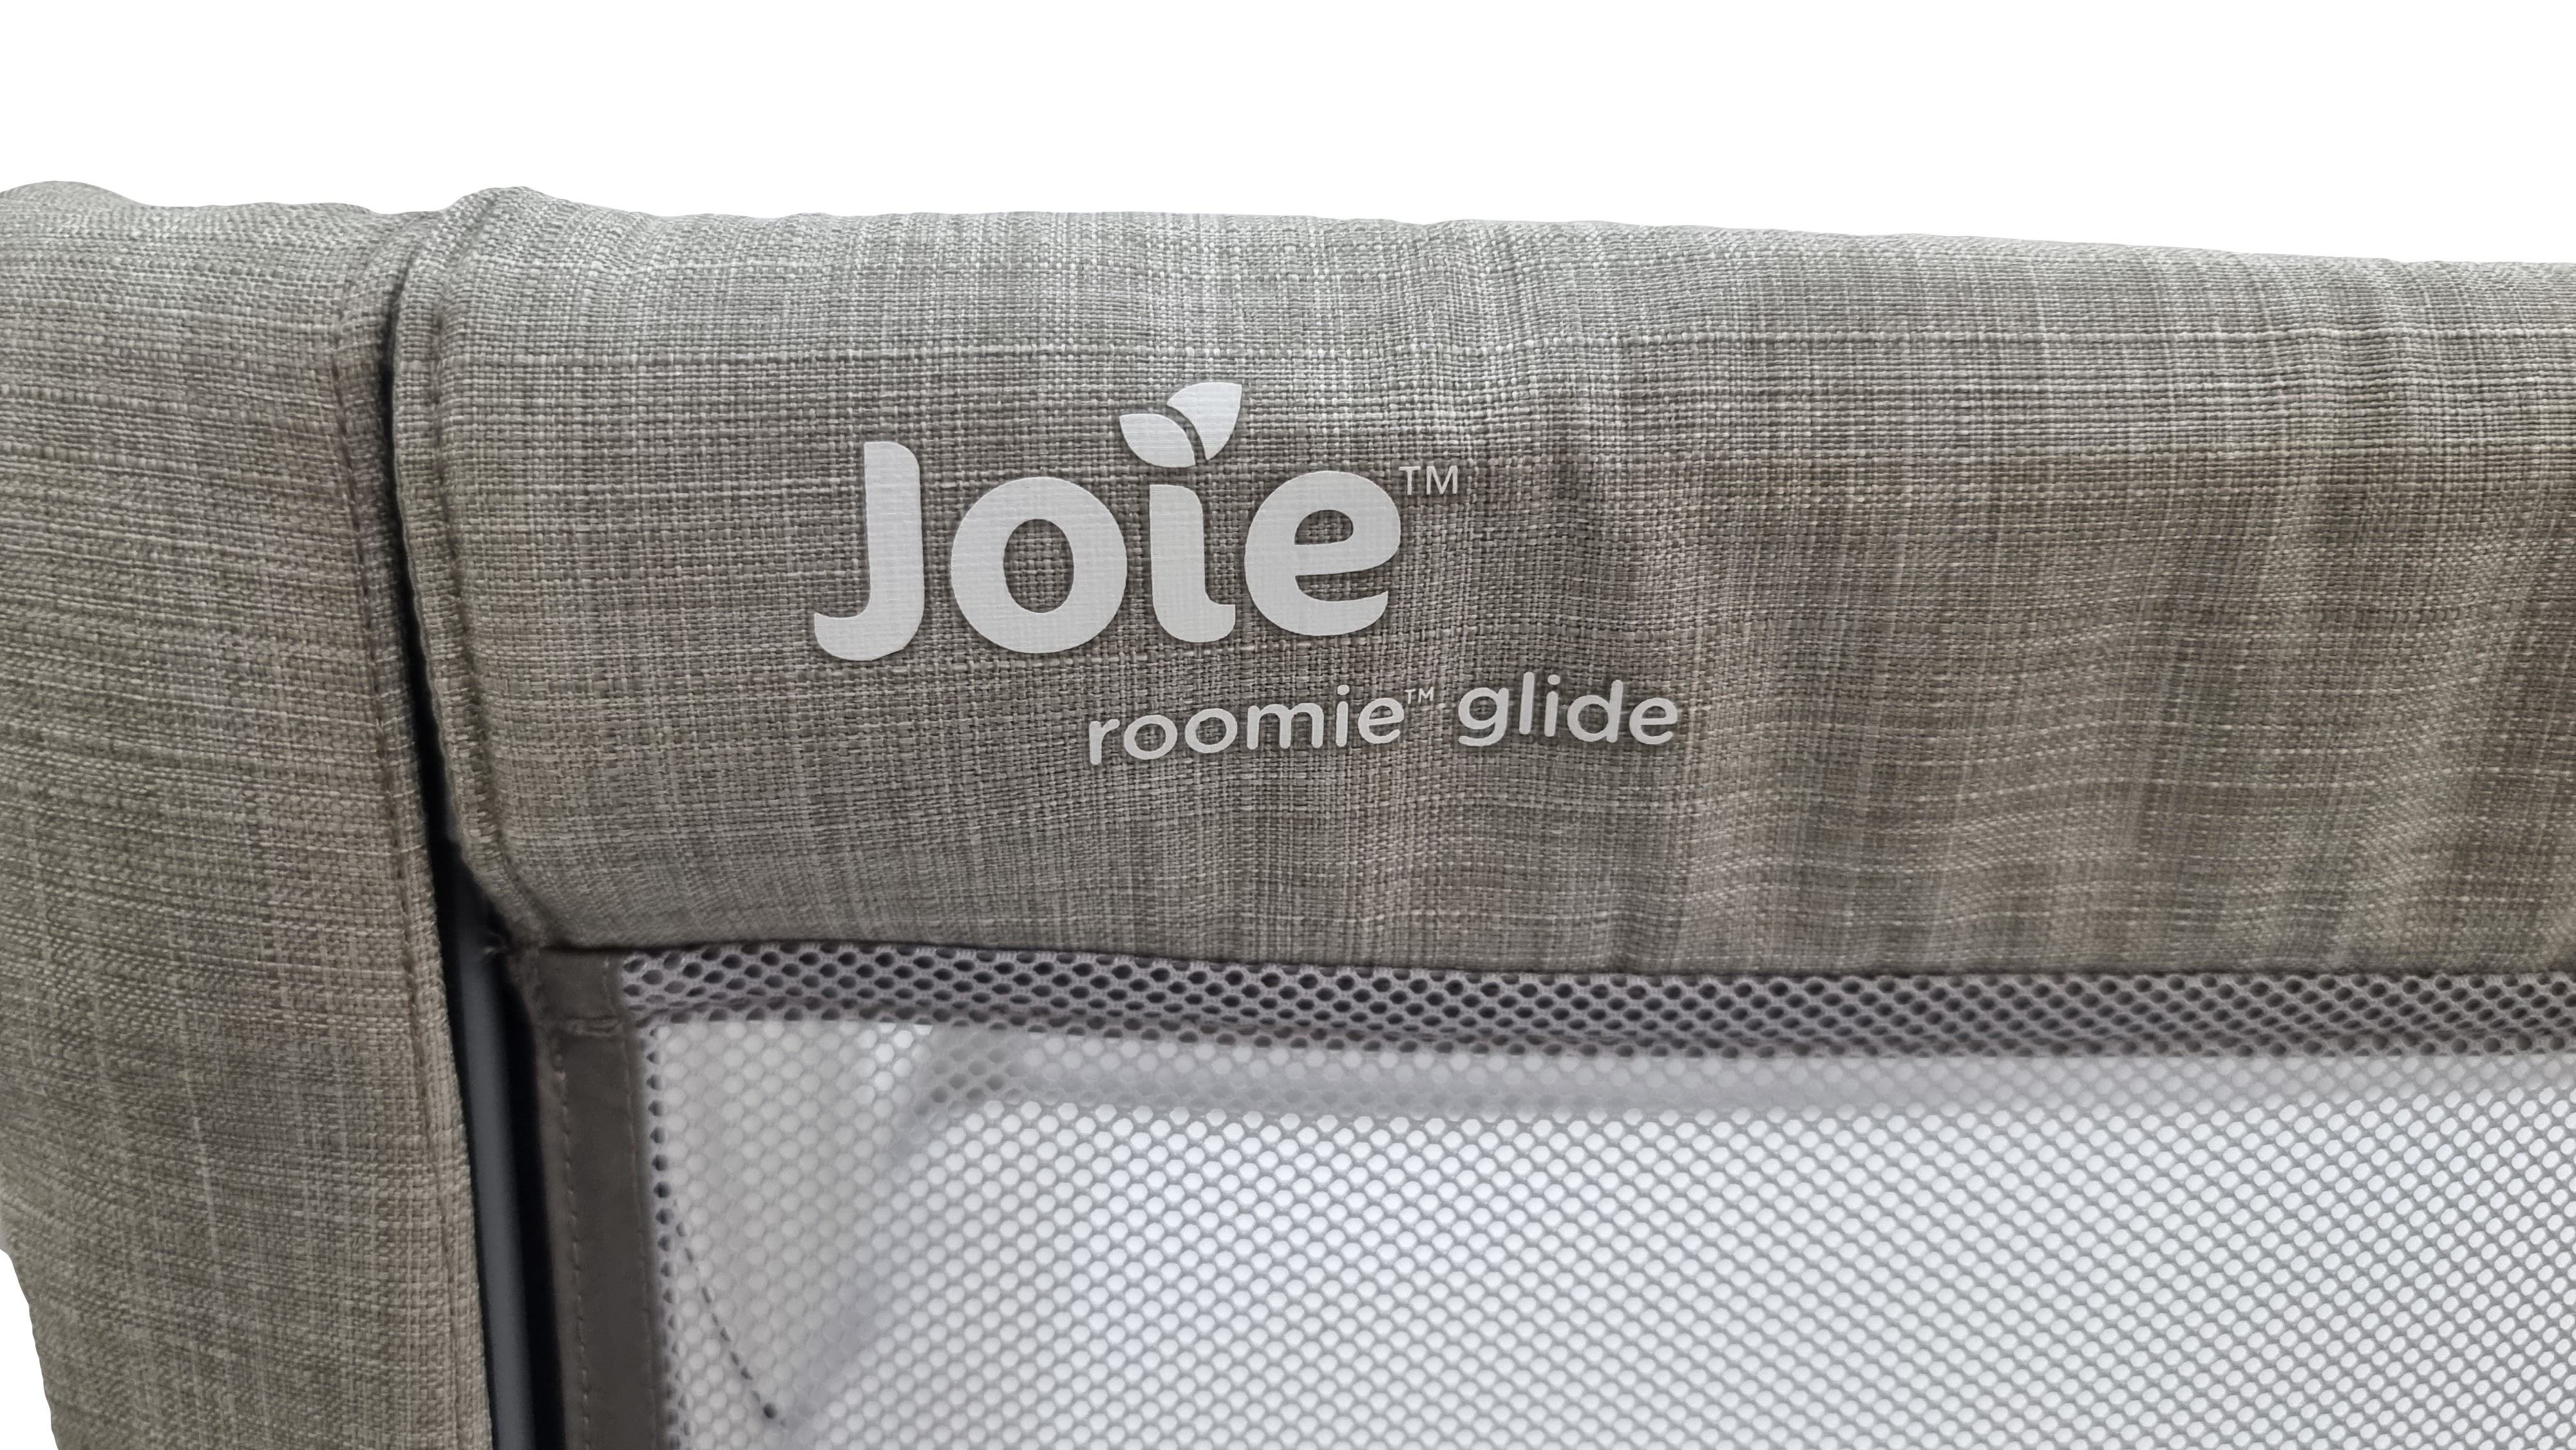 Joie roomie glide bedside crib